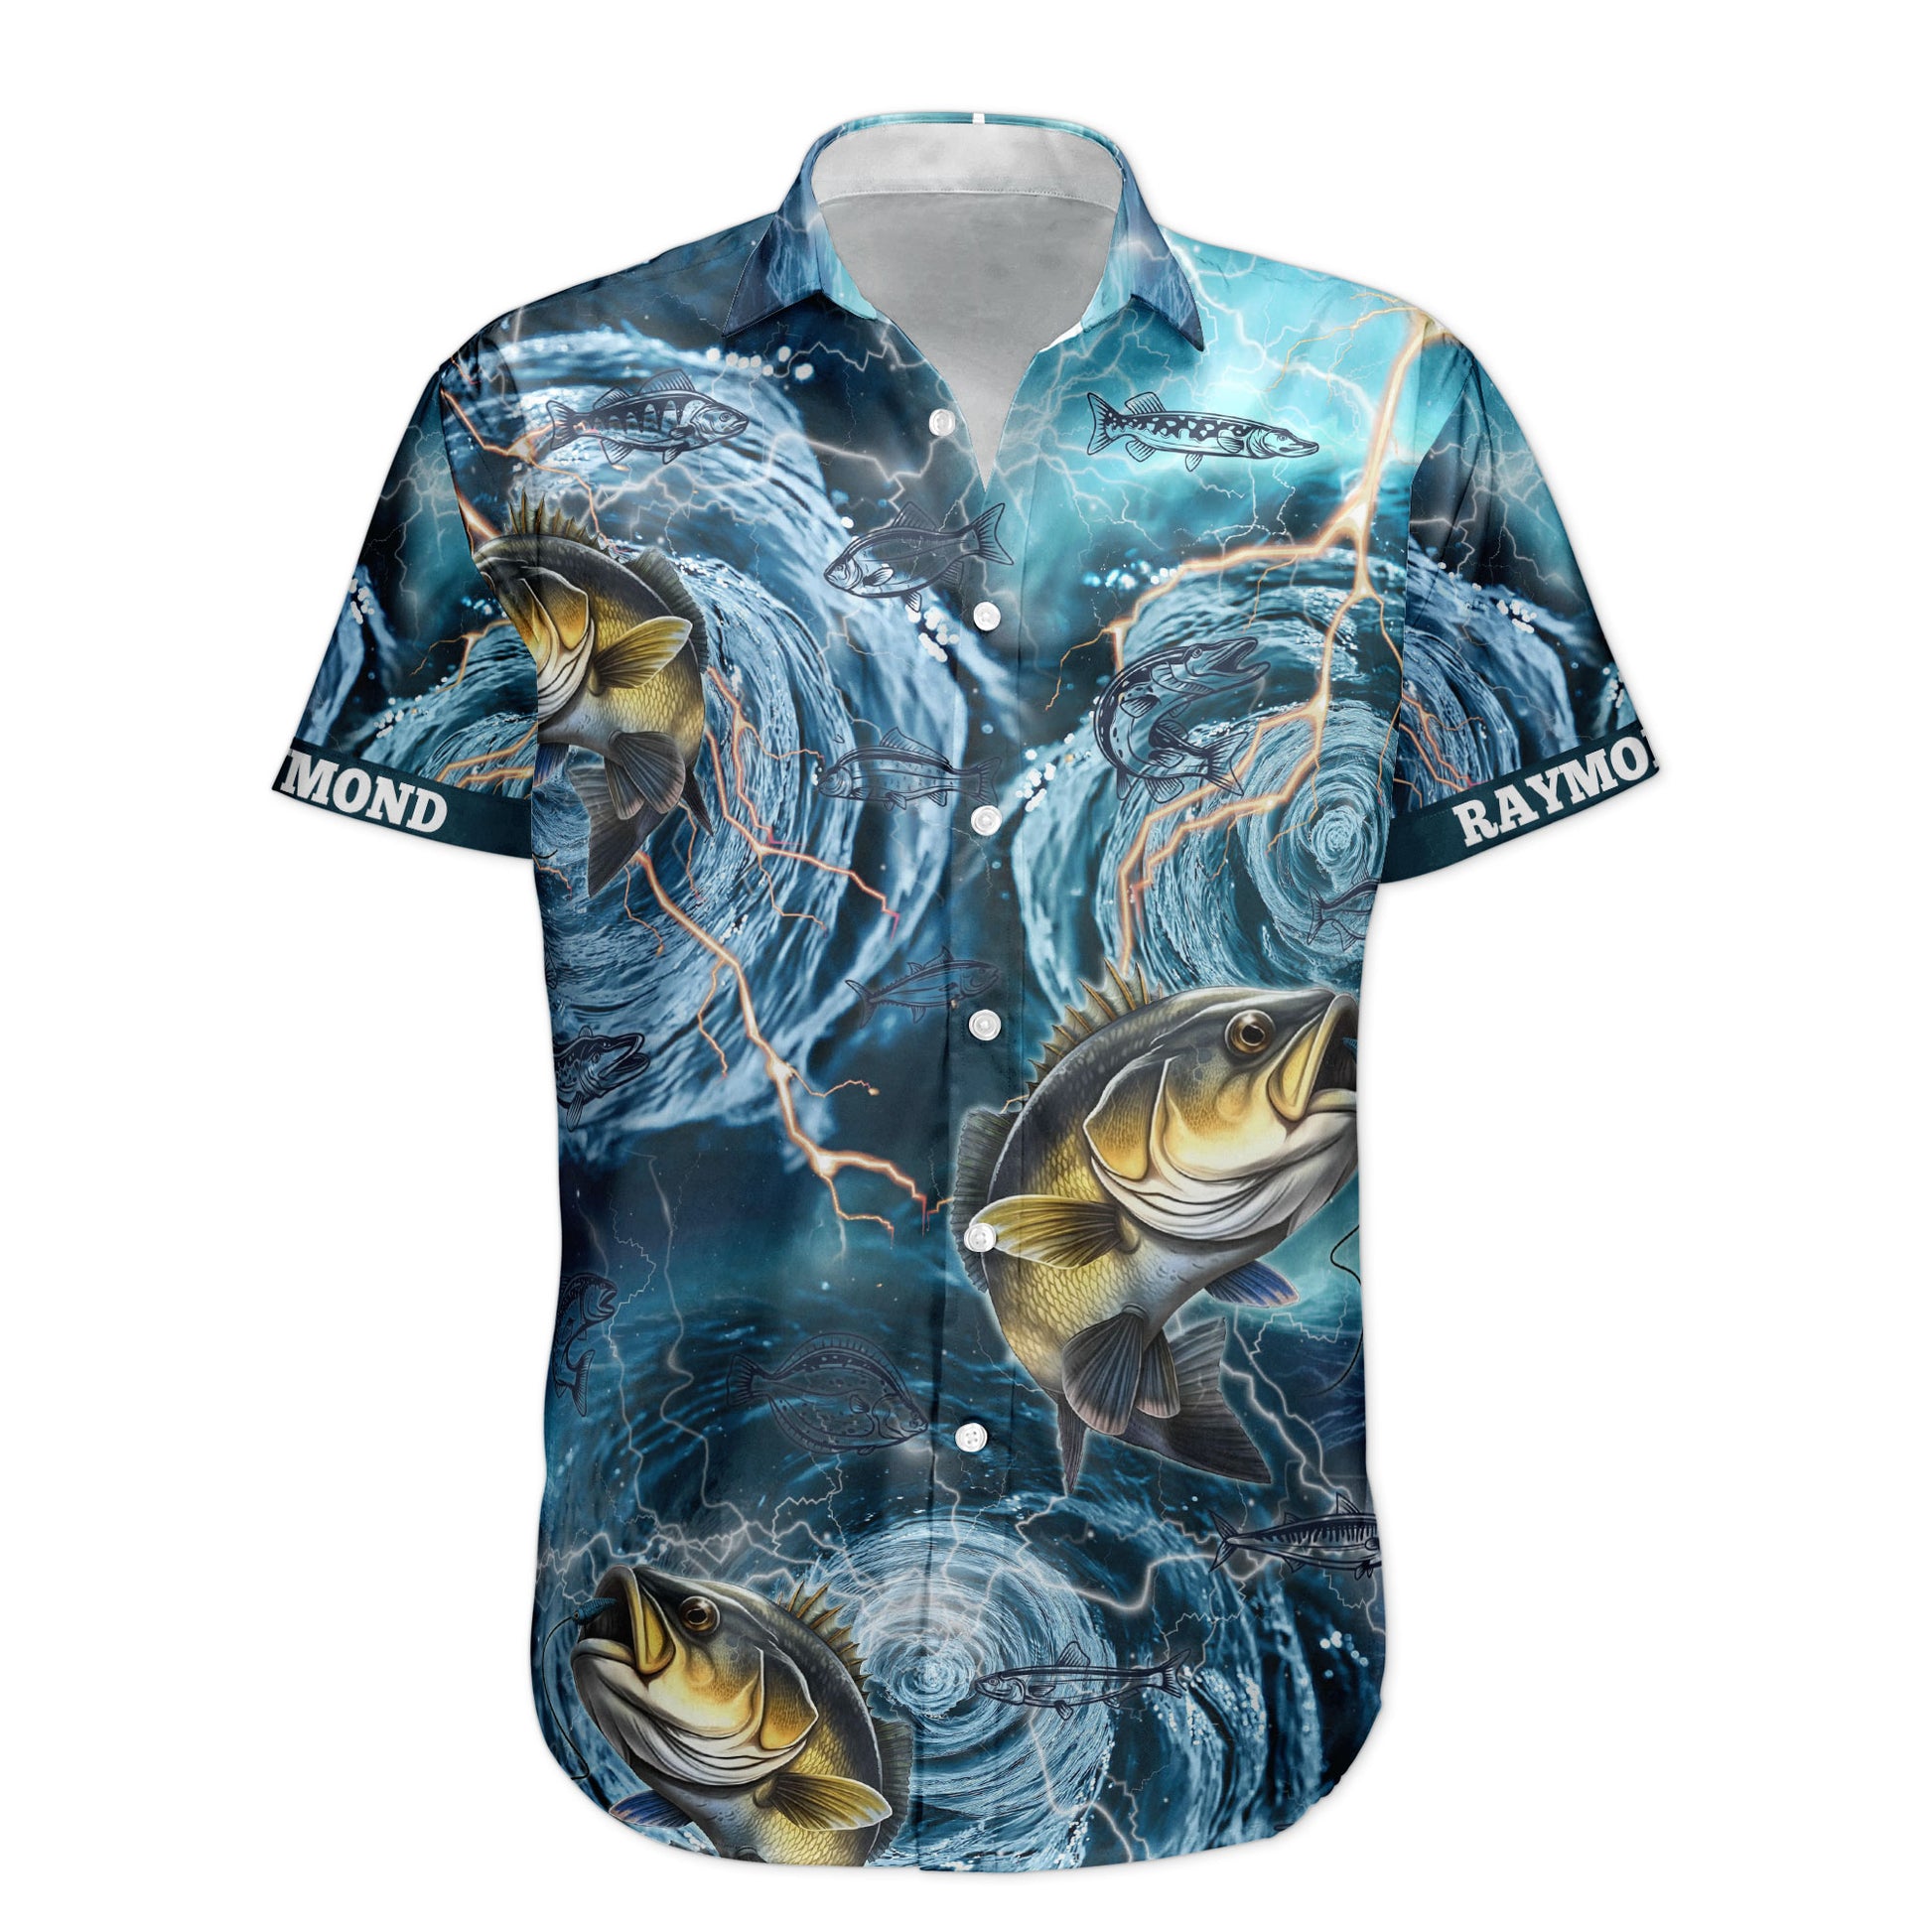 Sea Bass Fishing Hawaiian-style Shirts by Macoroo - Issuu